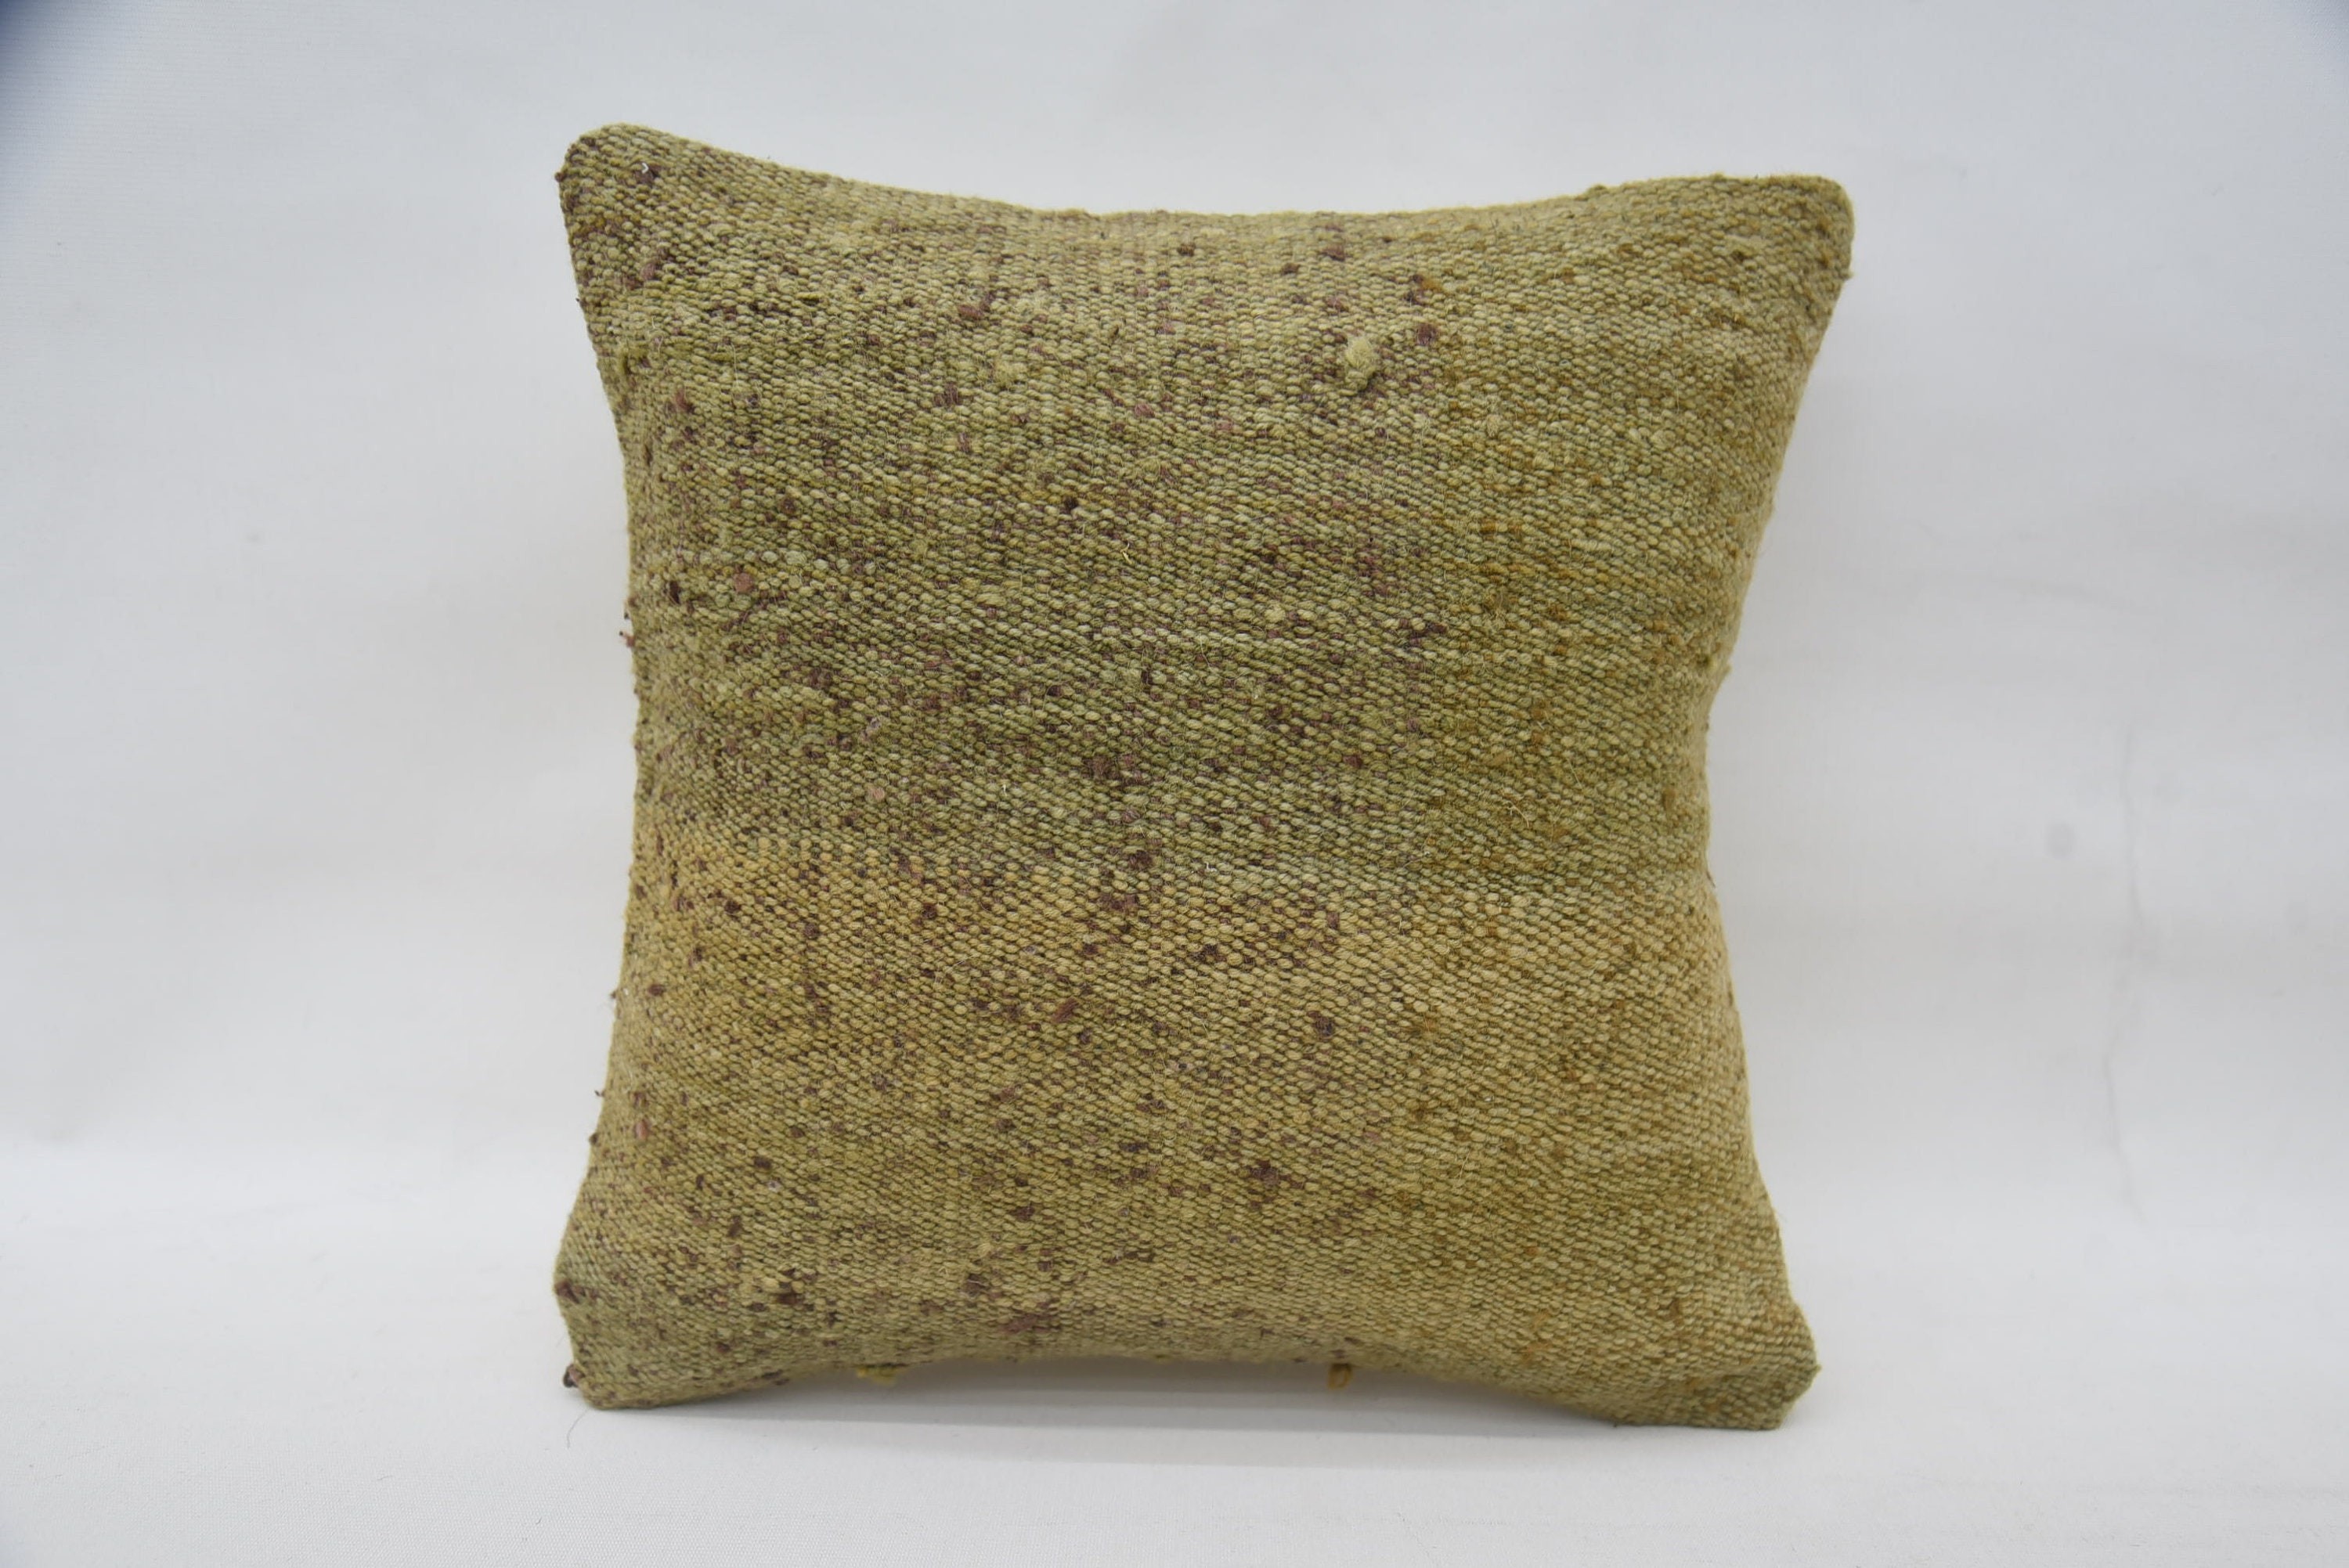 Knitted Cushion Cover, Ethnical Kilim Rug Pillow, Farmhouse Cushion, Handmade Kilim Cushion, 14"x14" Beige Pillow Cover, Home Decor Pillow